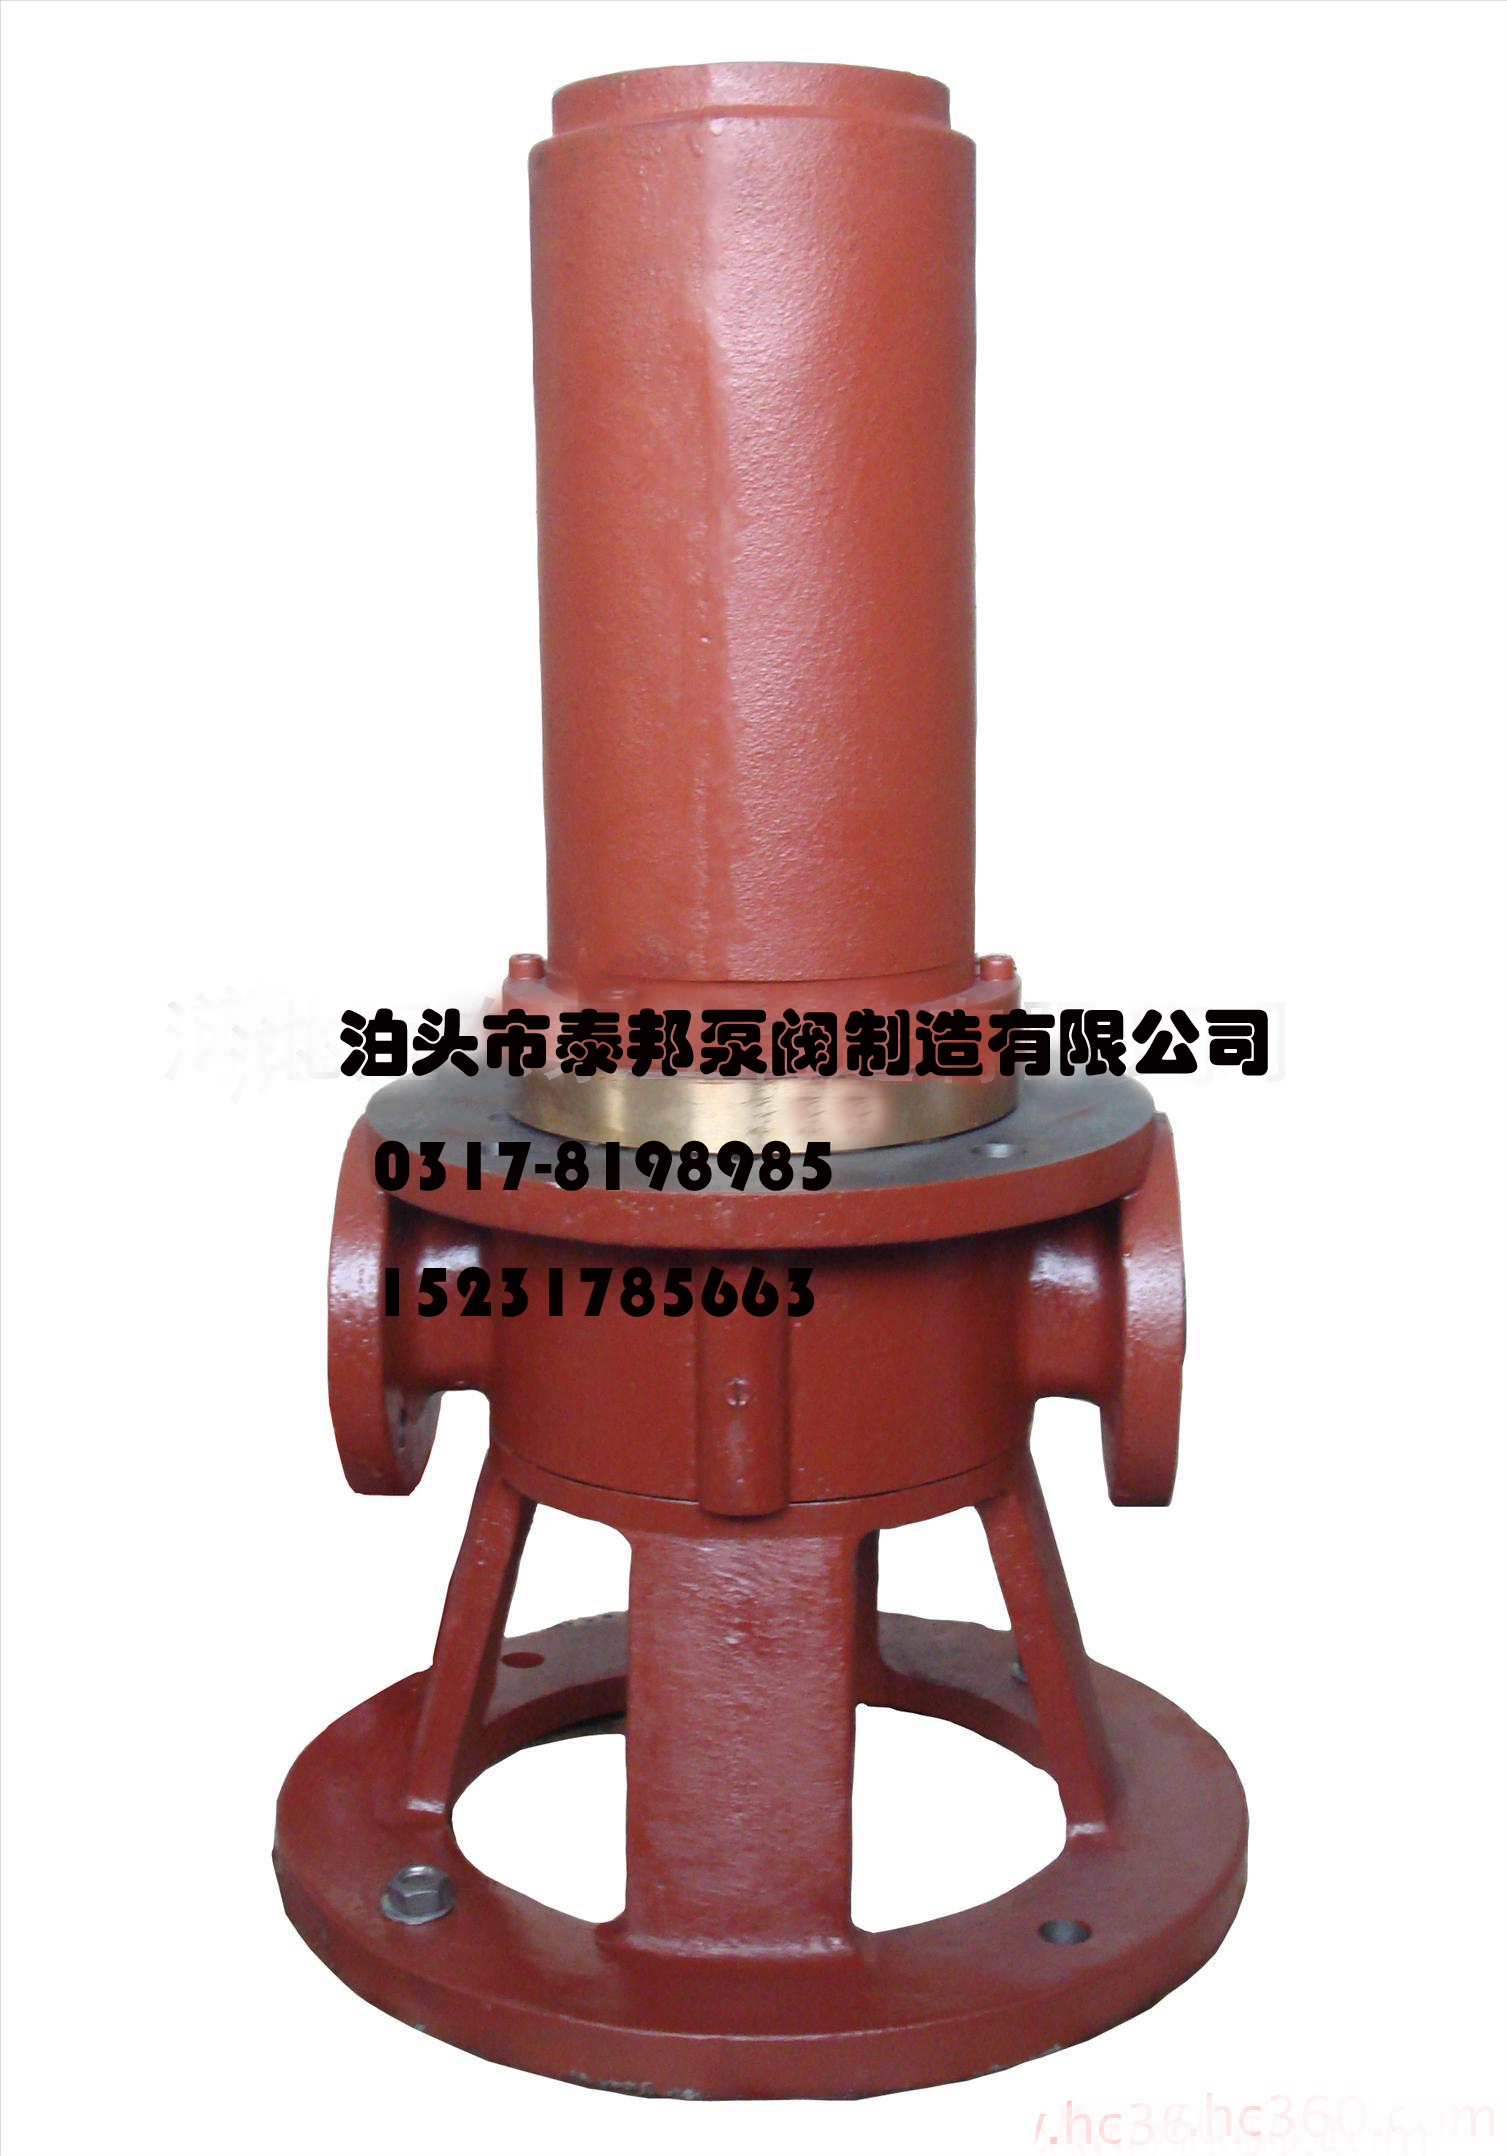 天津工业泵总厂3GR36X3C